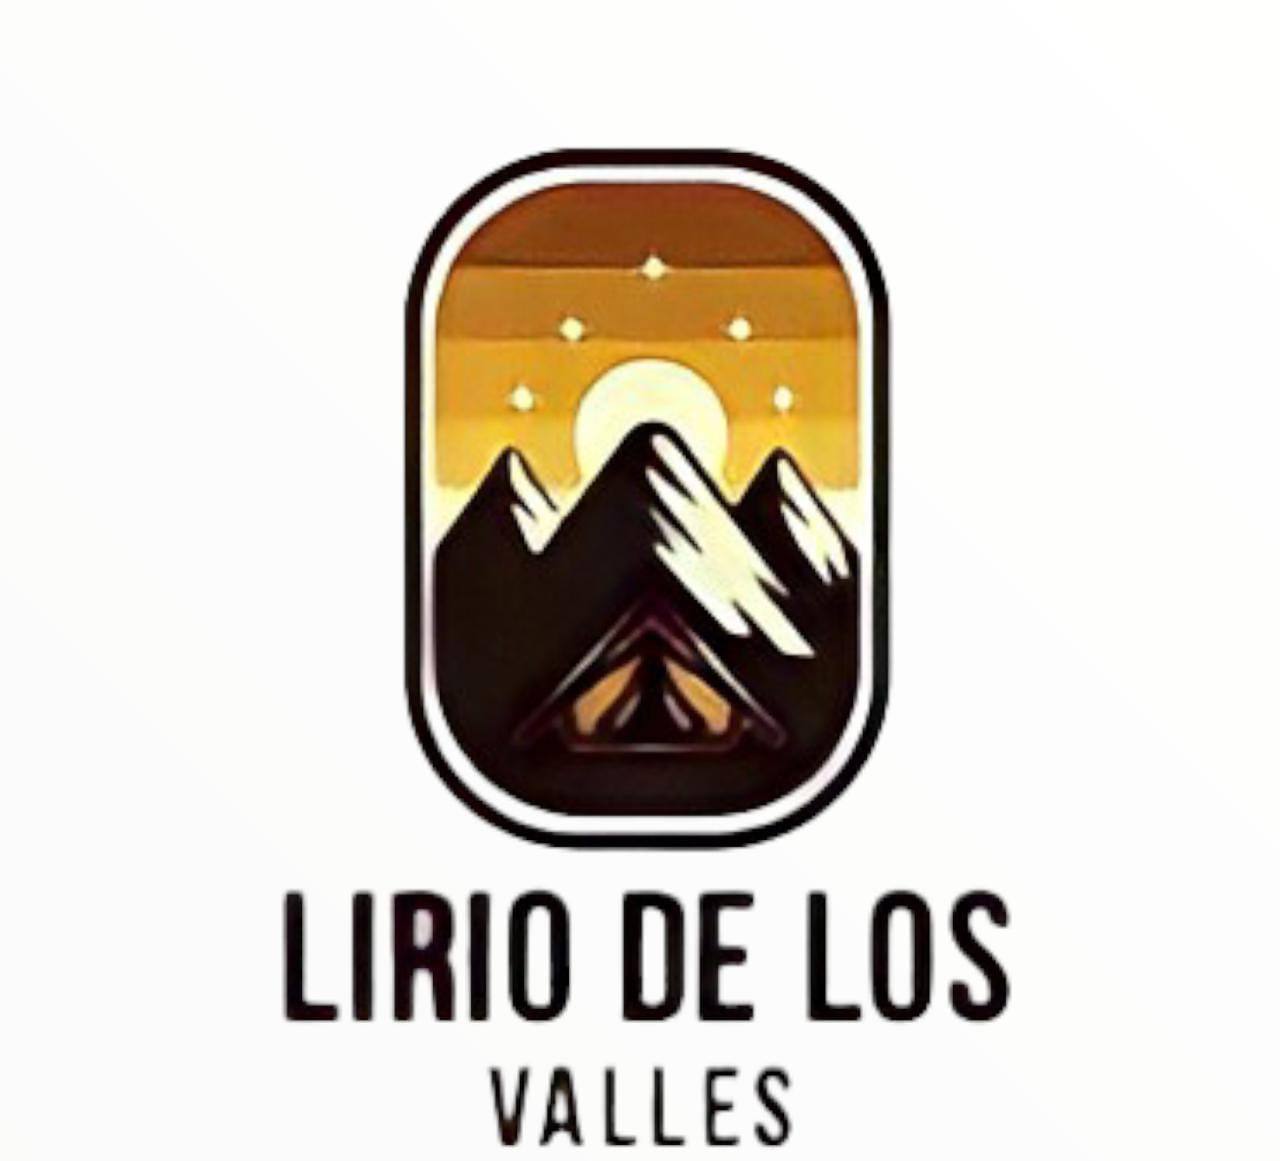 LIRIOS DE LOS VALLES